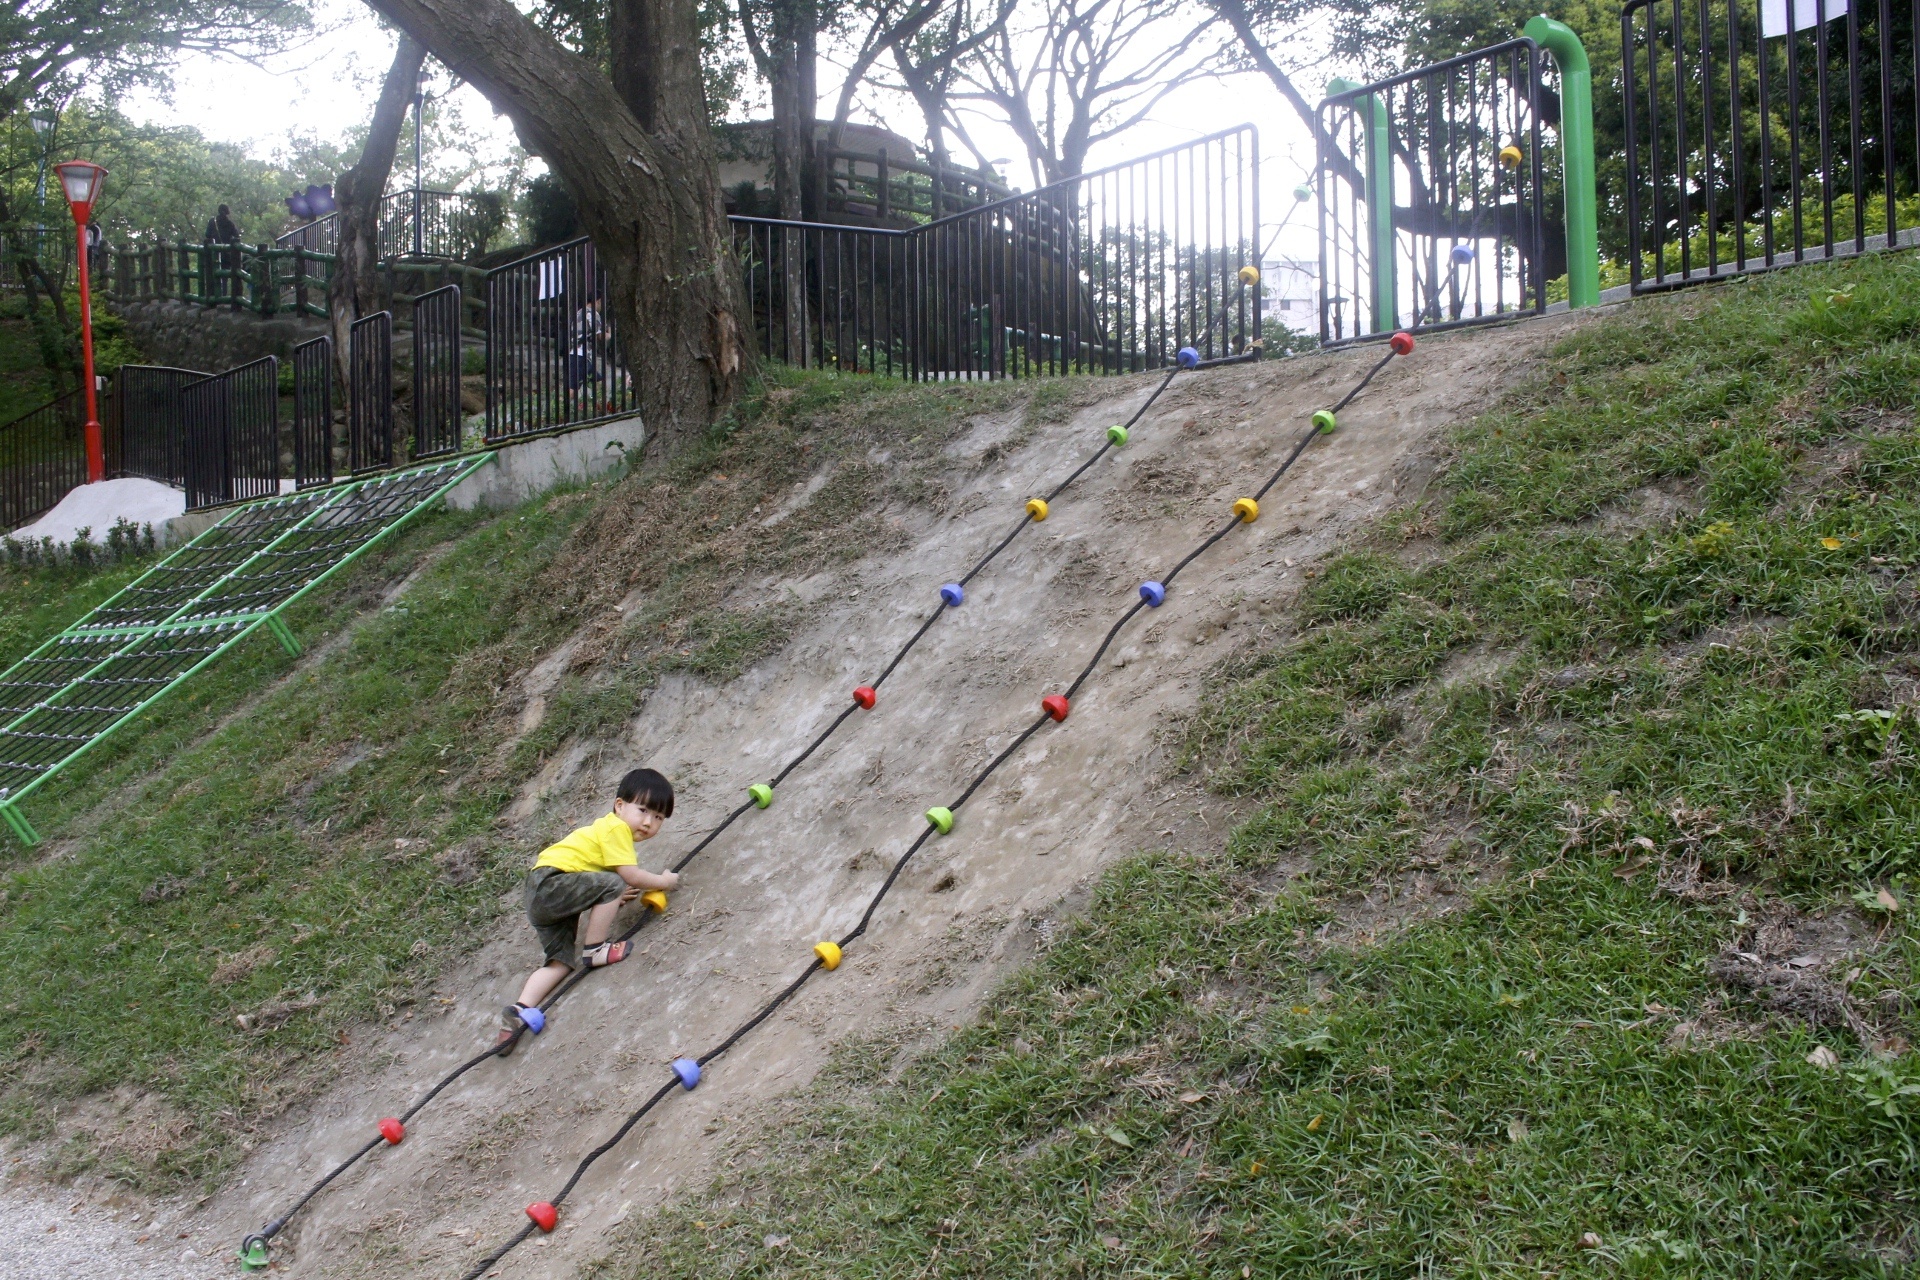 【新北 三峽中山公園】新景點30公尺「彩虹樹藤溜滑梯」。兒童版「跑酷棧道」需俱備小勇氣喔！